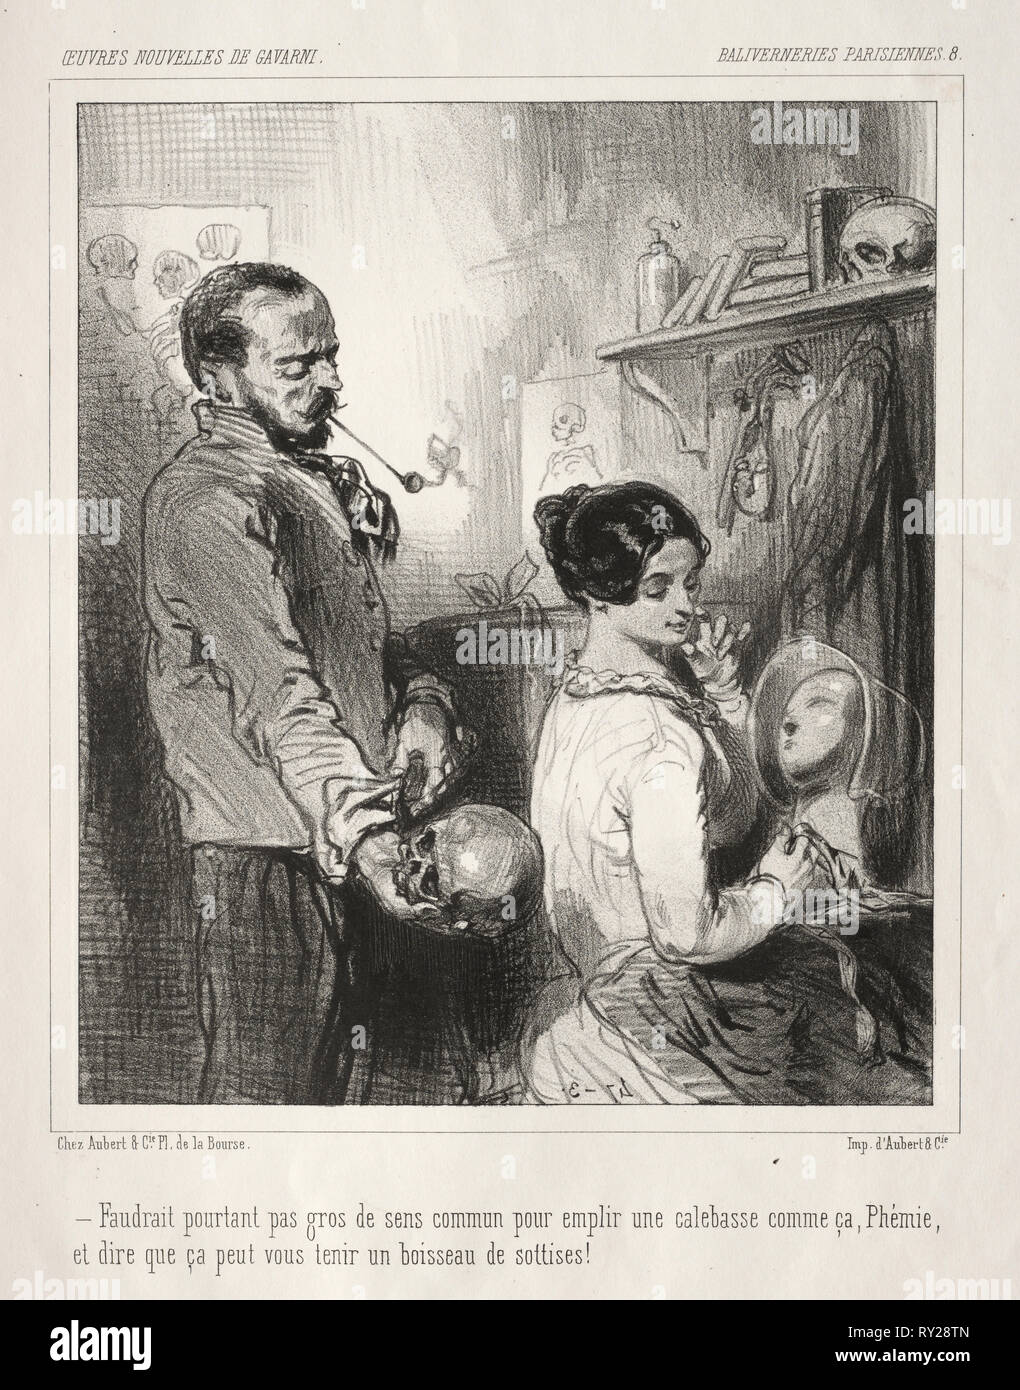 Baliverneries Parisiennes. Paul Gavarni (Französisch, 1804-1866). Lithographie Stockfoto